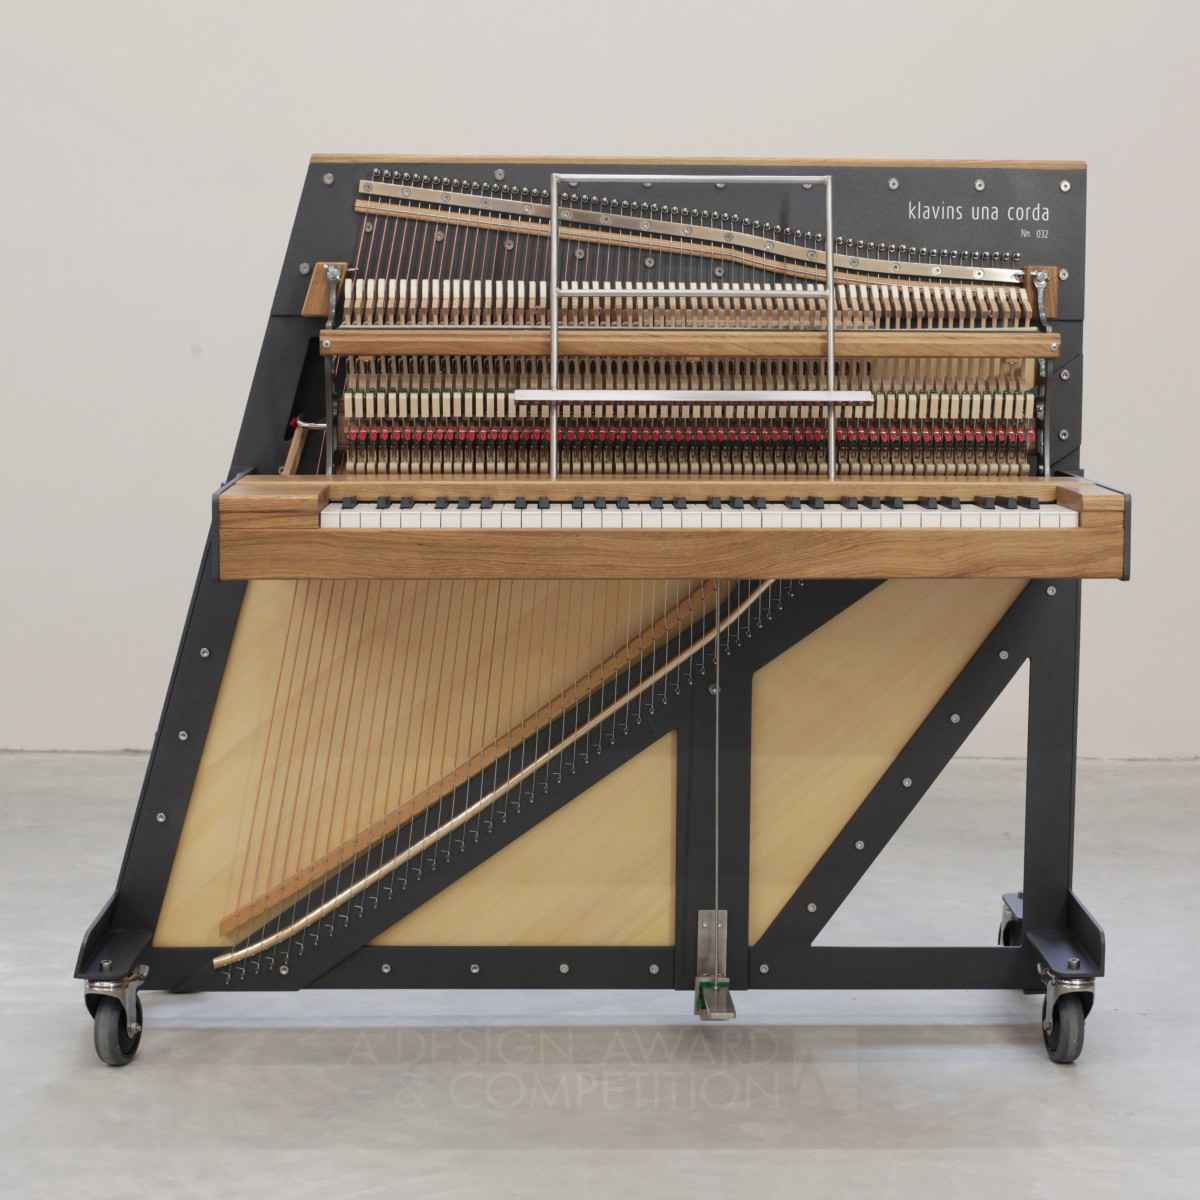 Una Corda Acoustic Piano